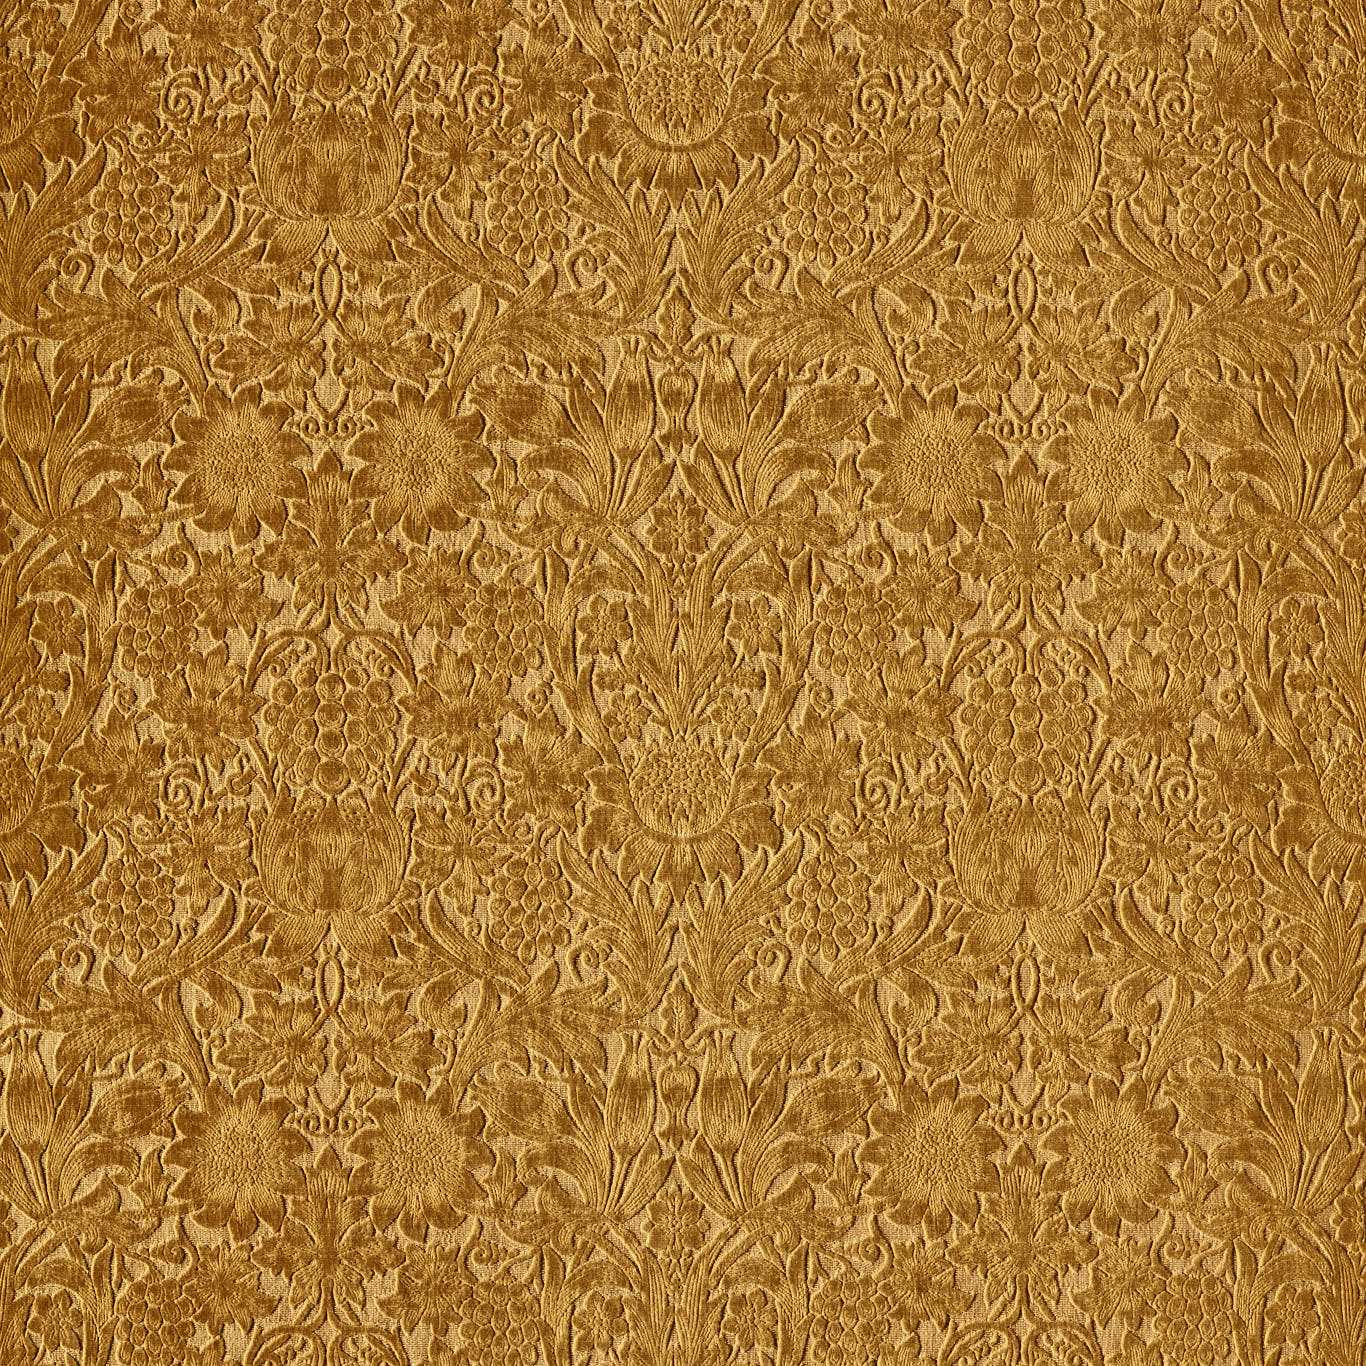 Sunflower Caffoy Velvet Sussex Rush Fabric by MOR